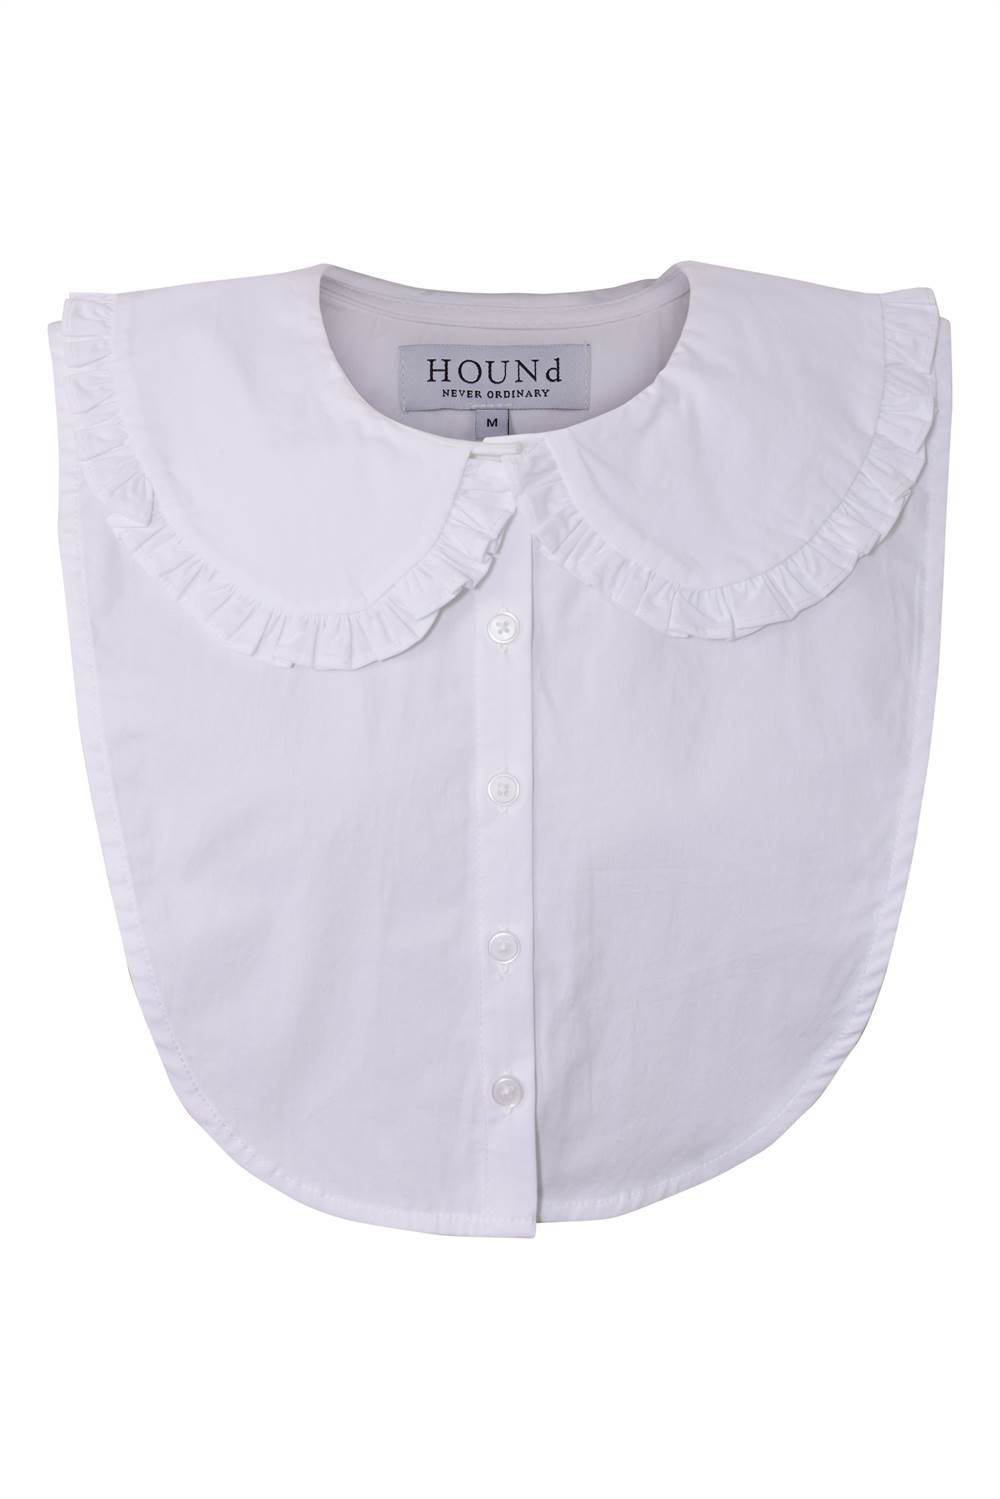 fordomme gravid gå på arbejde Køb Hound Collar halv skjorte krave - hvid